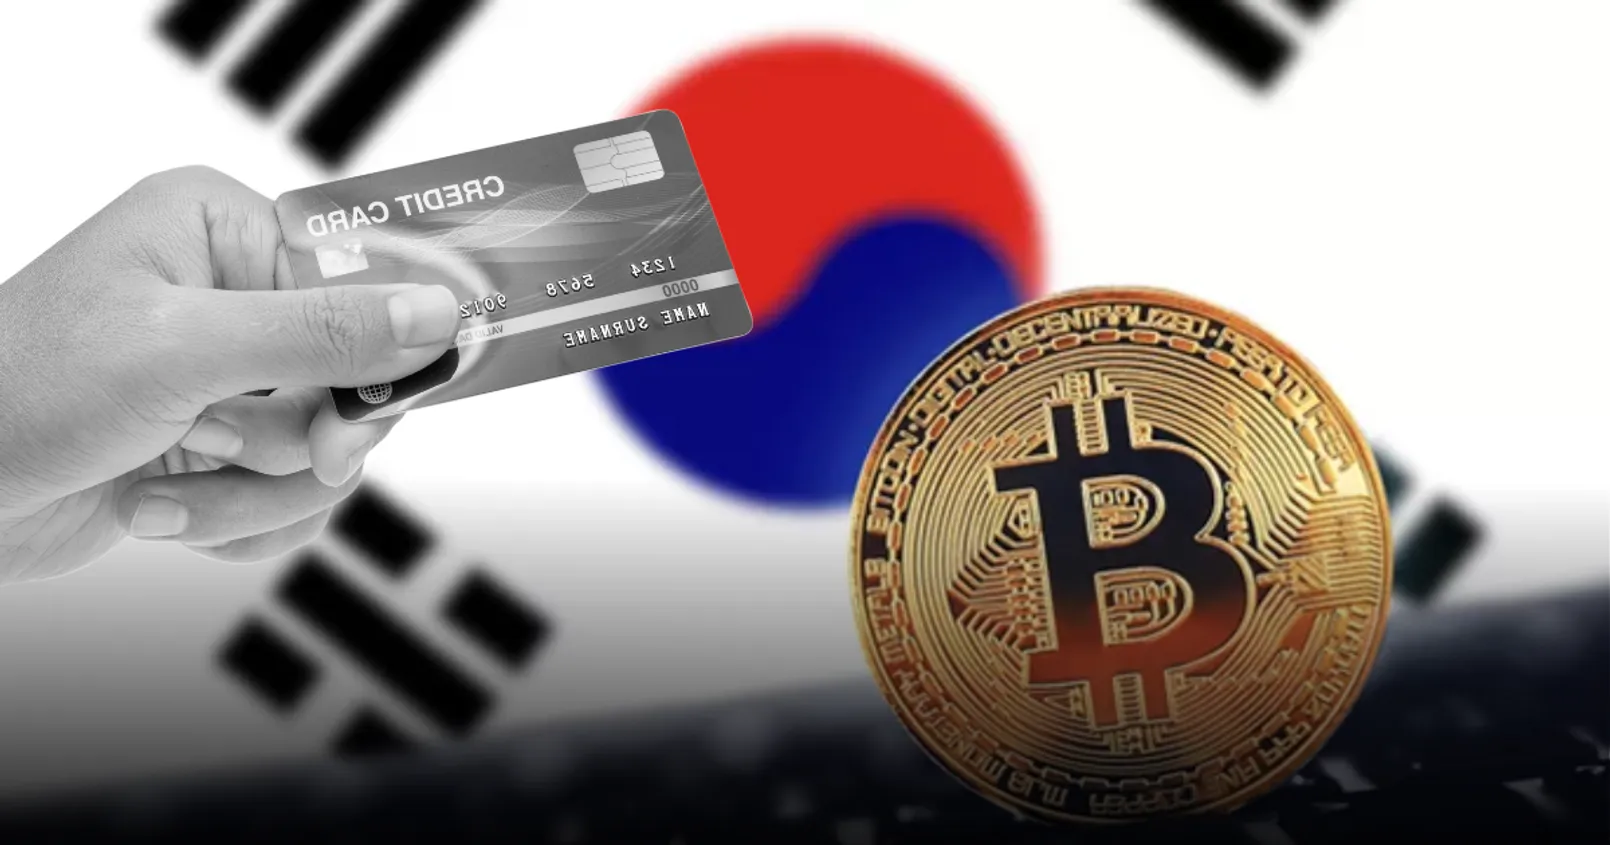 ทางการเกาหลีใต้ เตรียมยื่นเรื่องเสนอ ให้มีการ 'ยกเลิก' การใช้บัตรเครดิต ในการซื้อสินทรัพย์ดิจิทัล